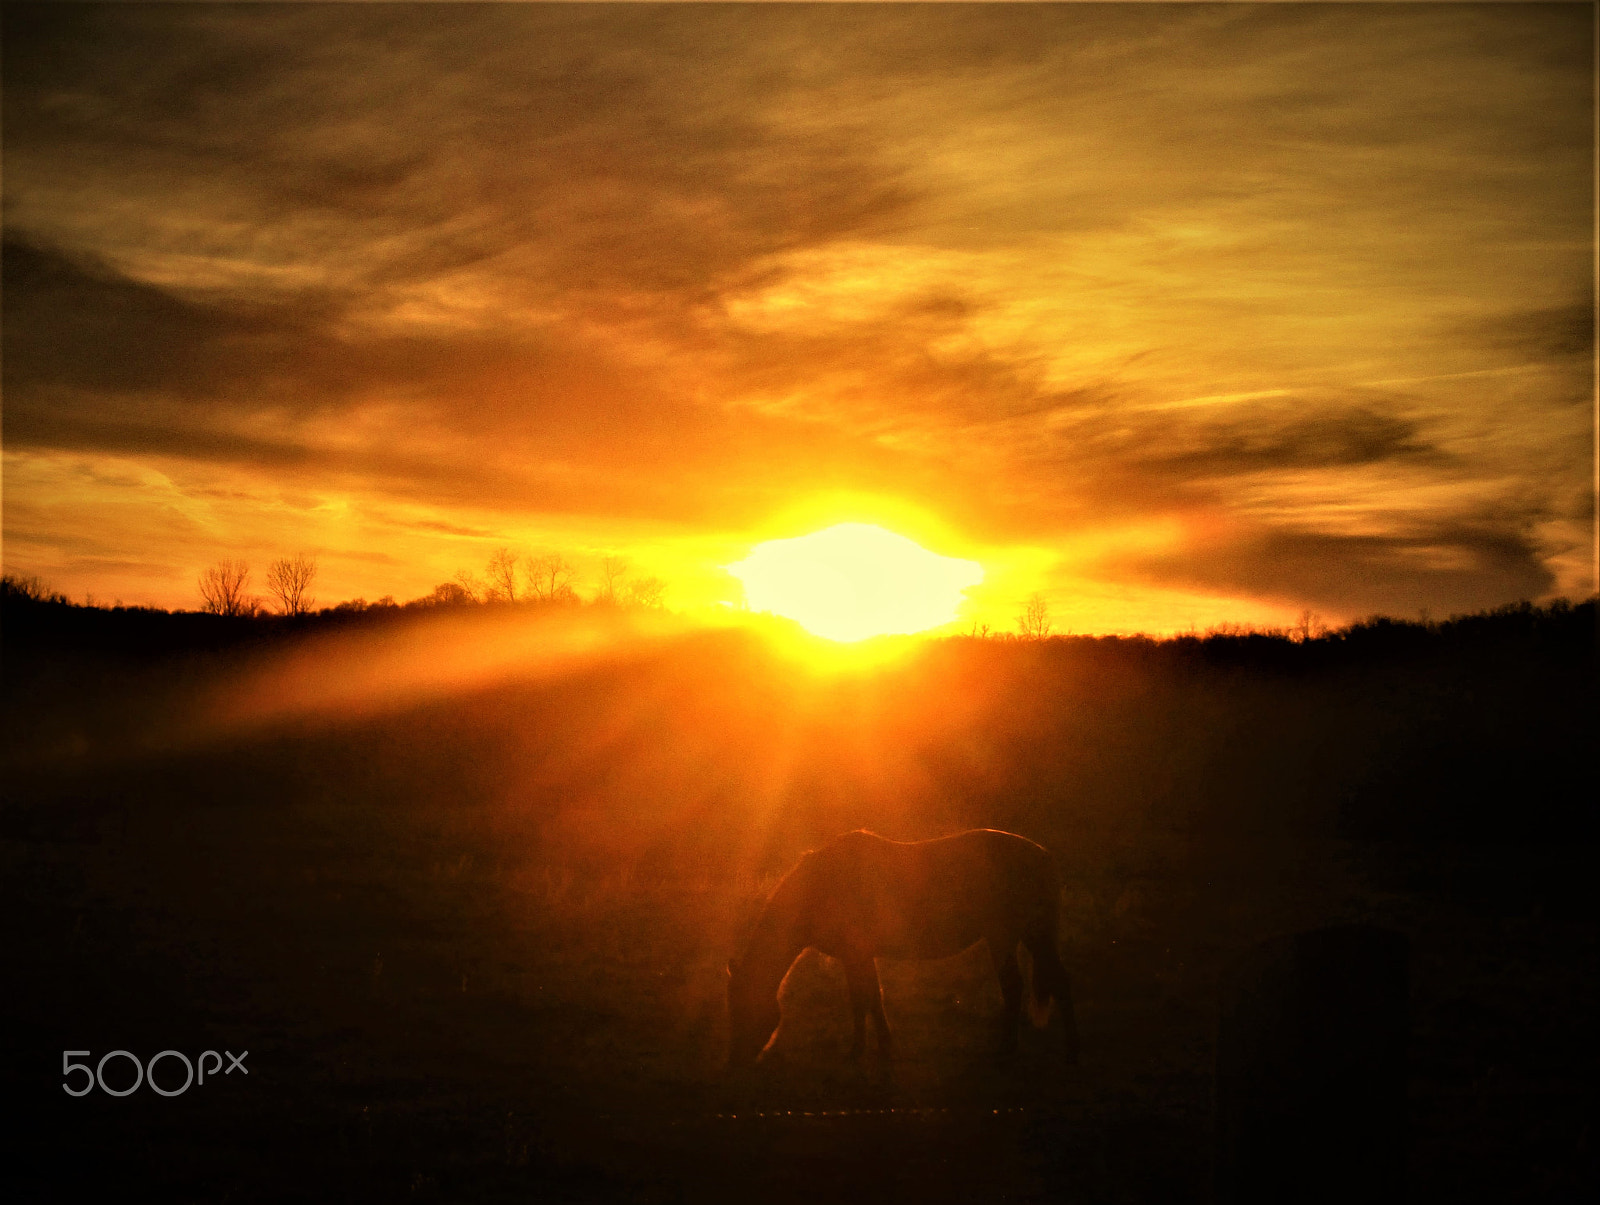 Canon PowerShot ELPH 160 (IXUS 160 / IXY 150) sample photo. Horse at sunset photography